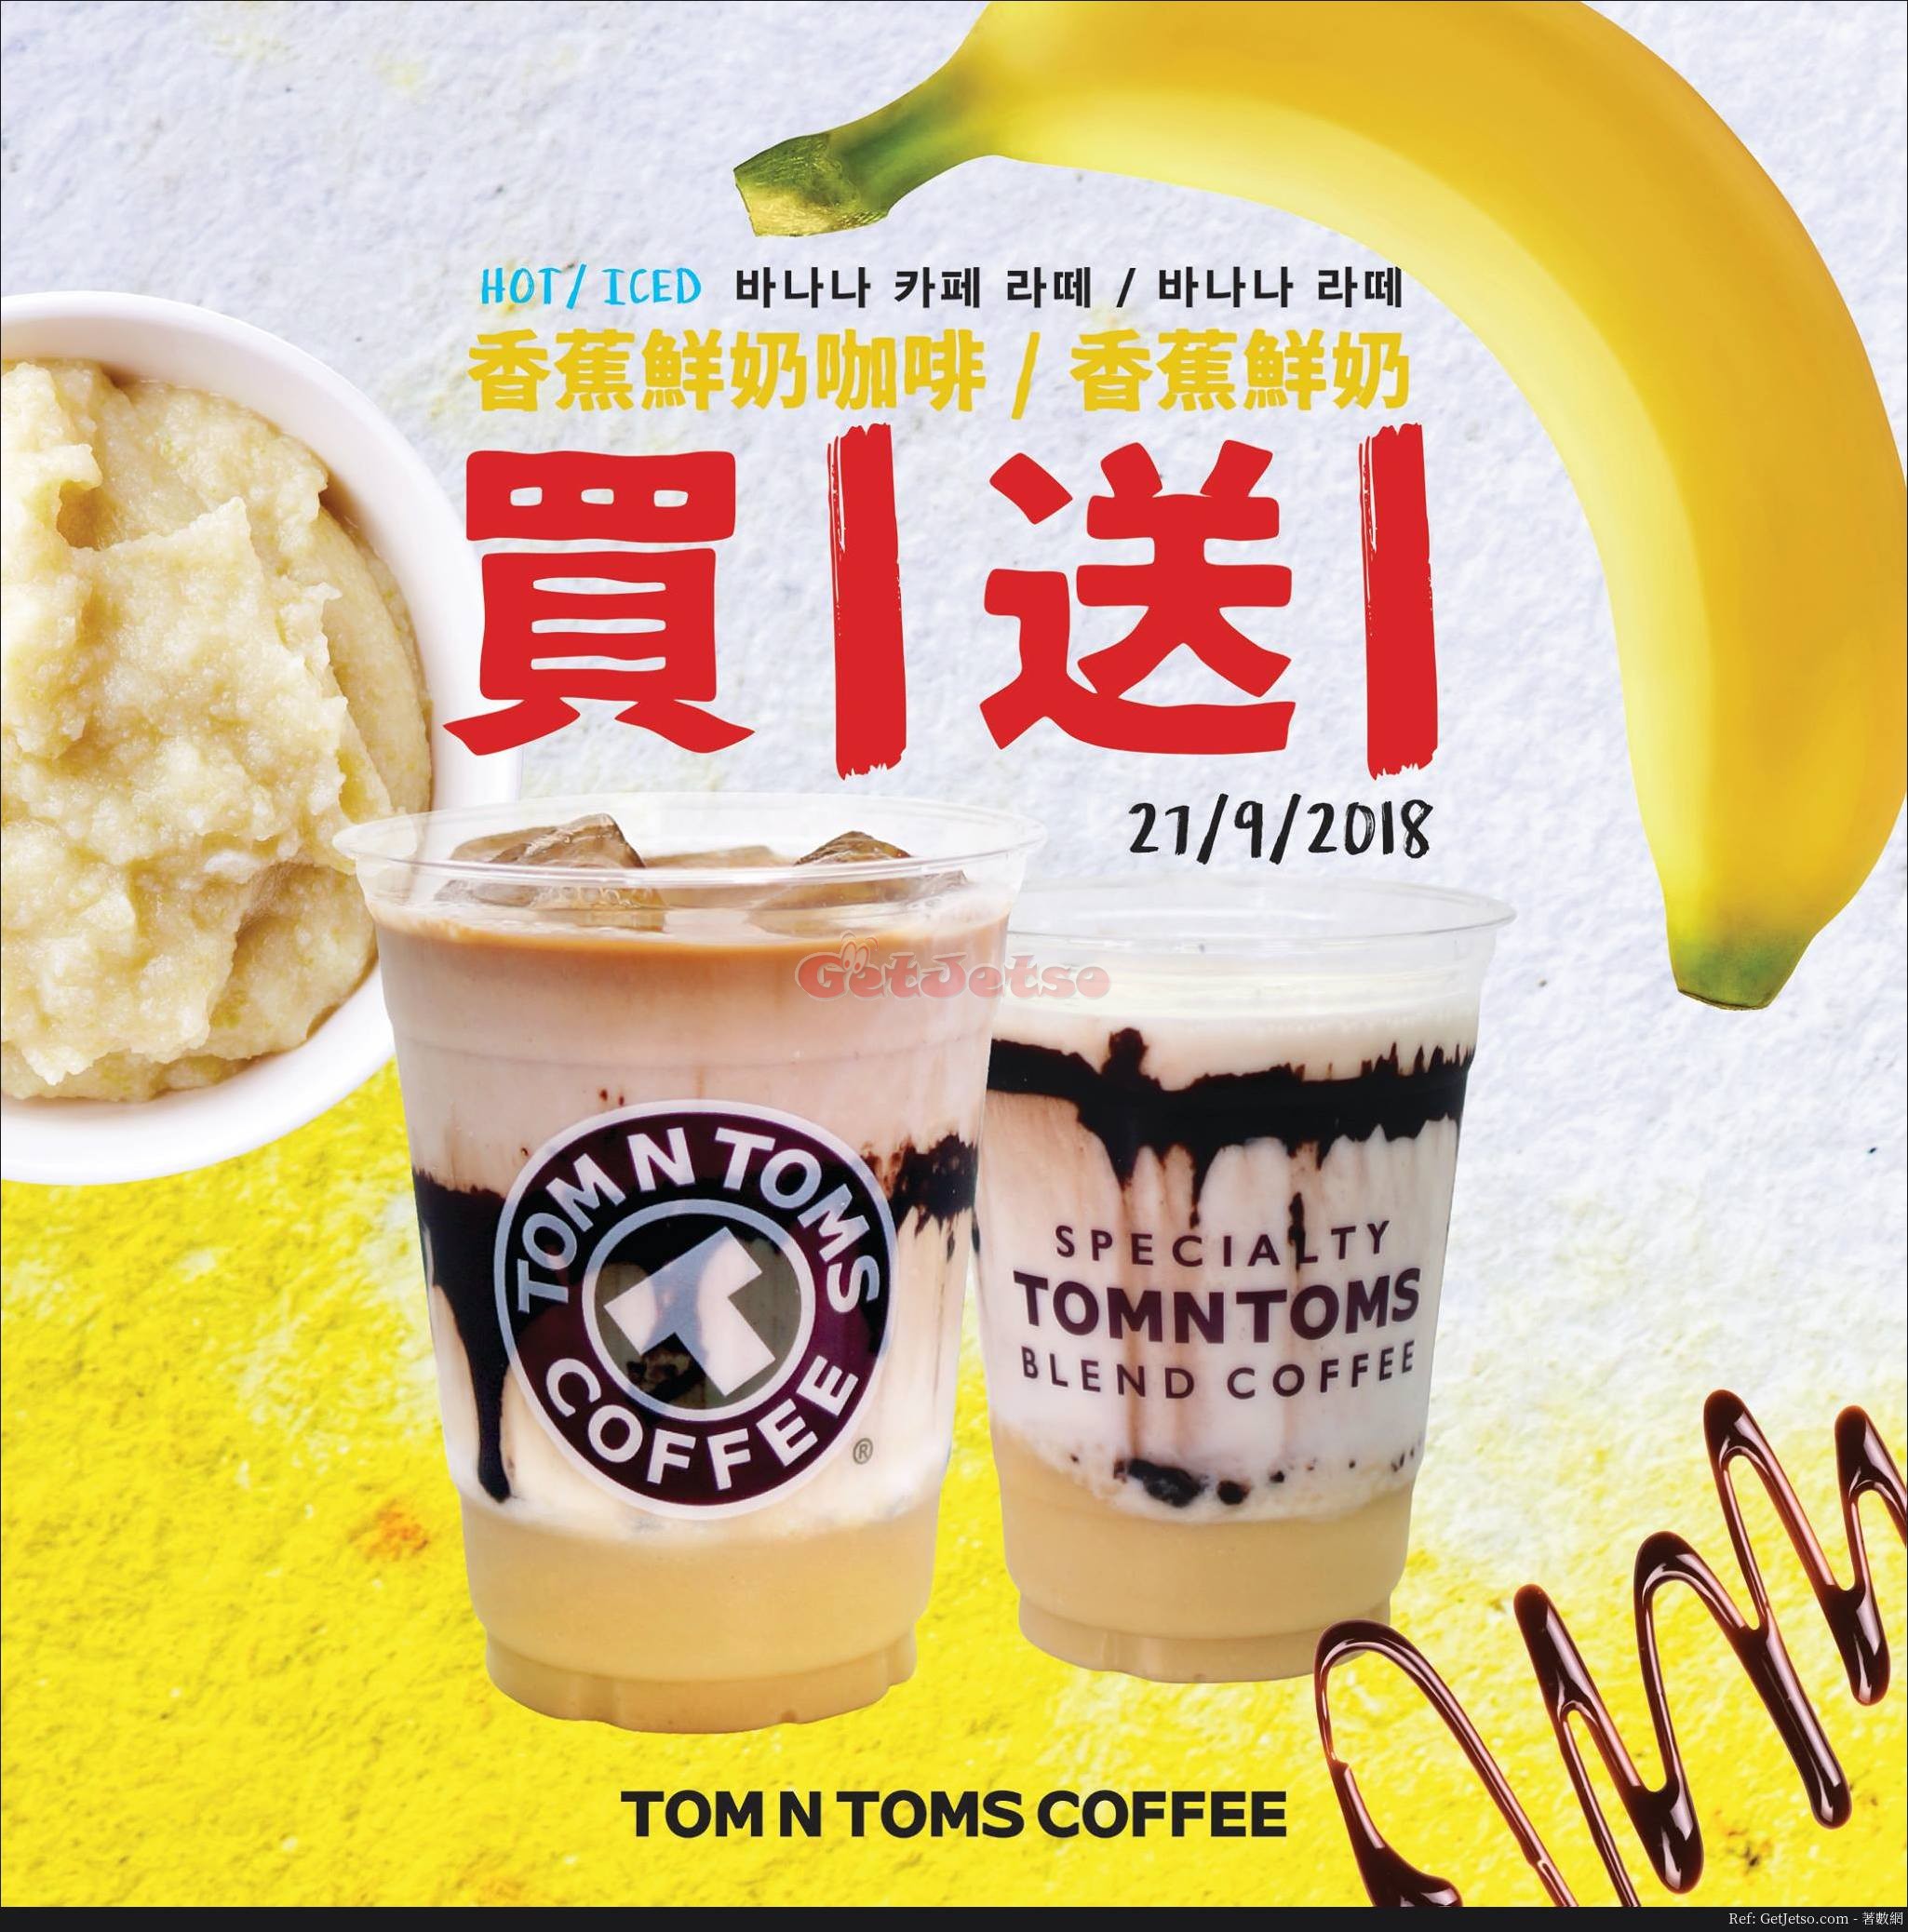 Tom N Toms 香蕉鮮奶系列飲品買1送1優惠(18年9月27日)圖片1